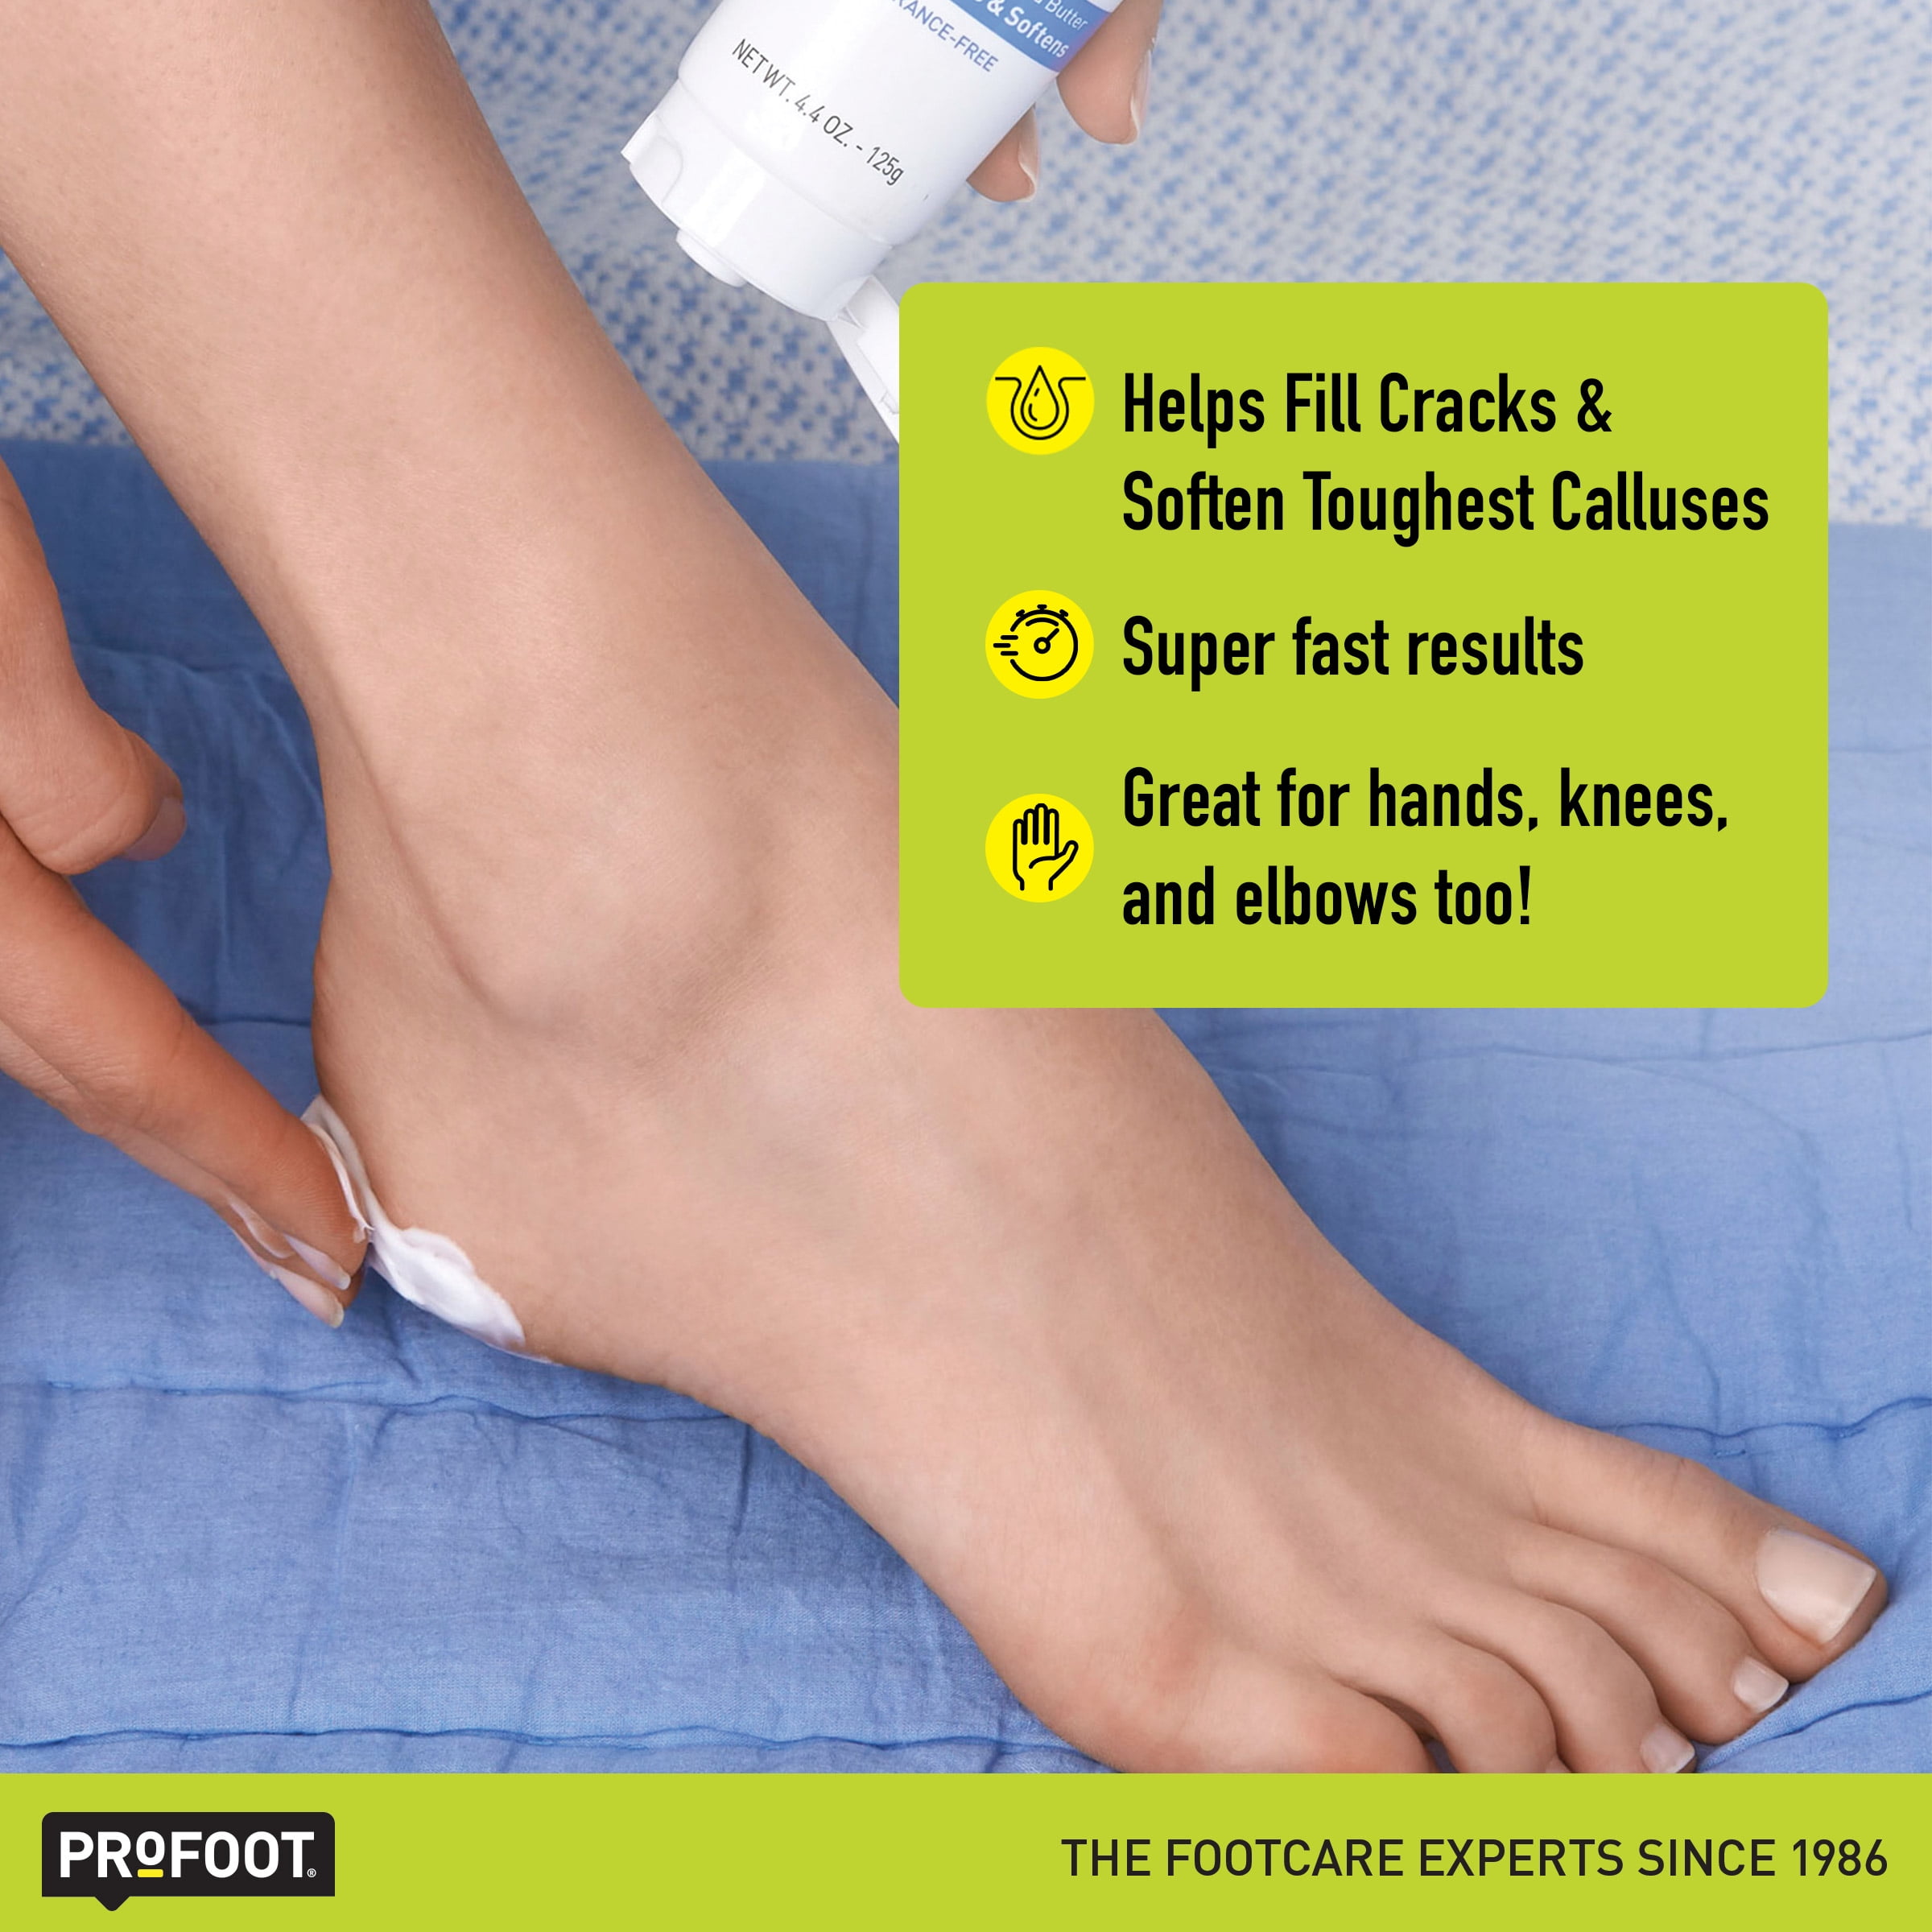 Cracked Heel Repair Foot Cream – Spatz India